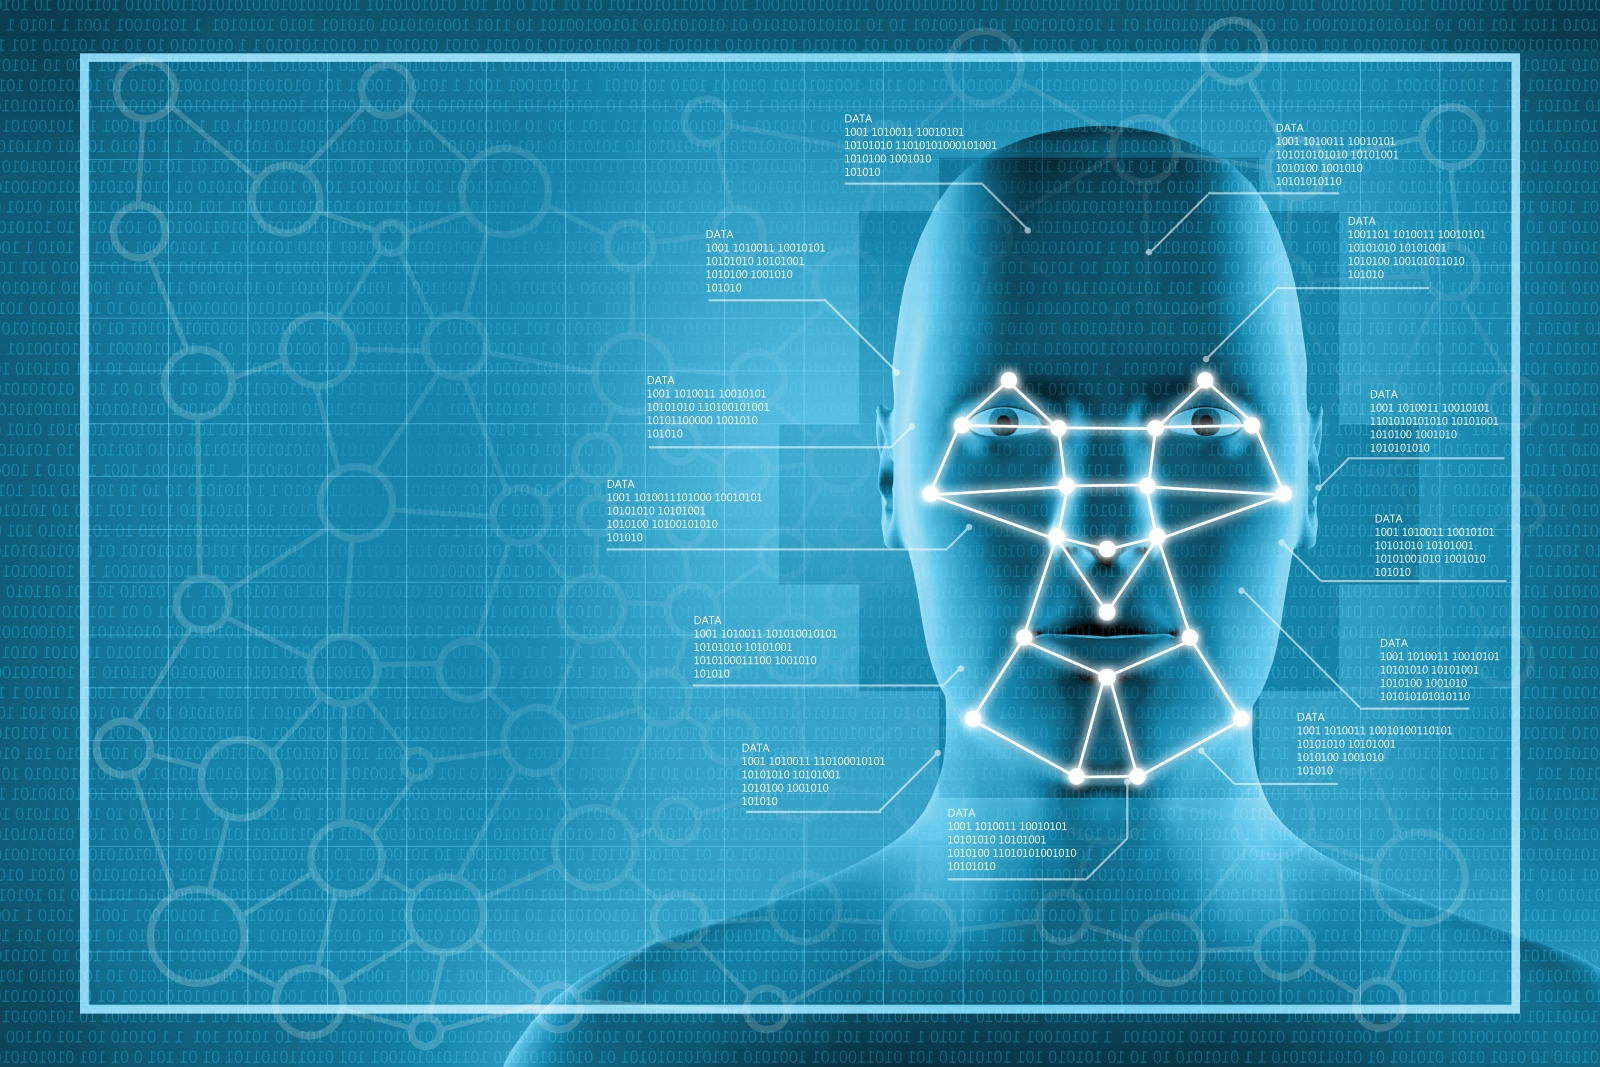 aliensense facial recognition software